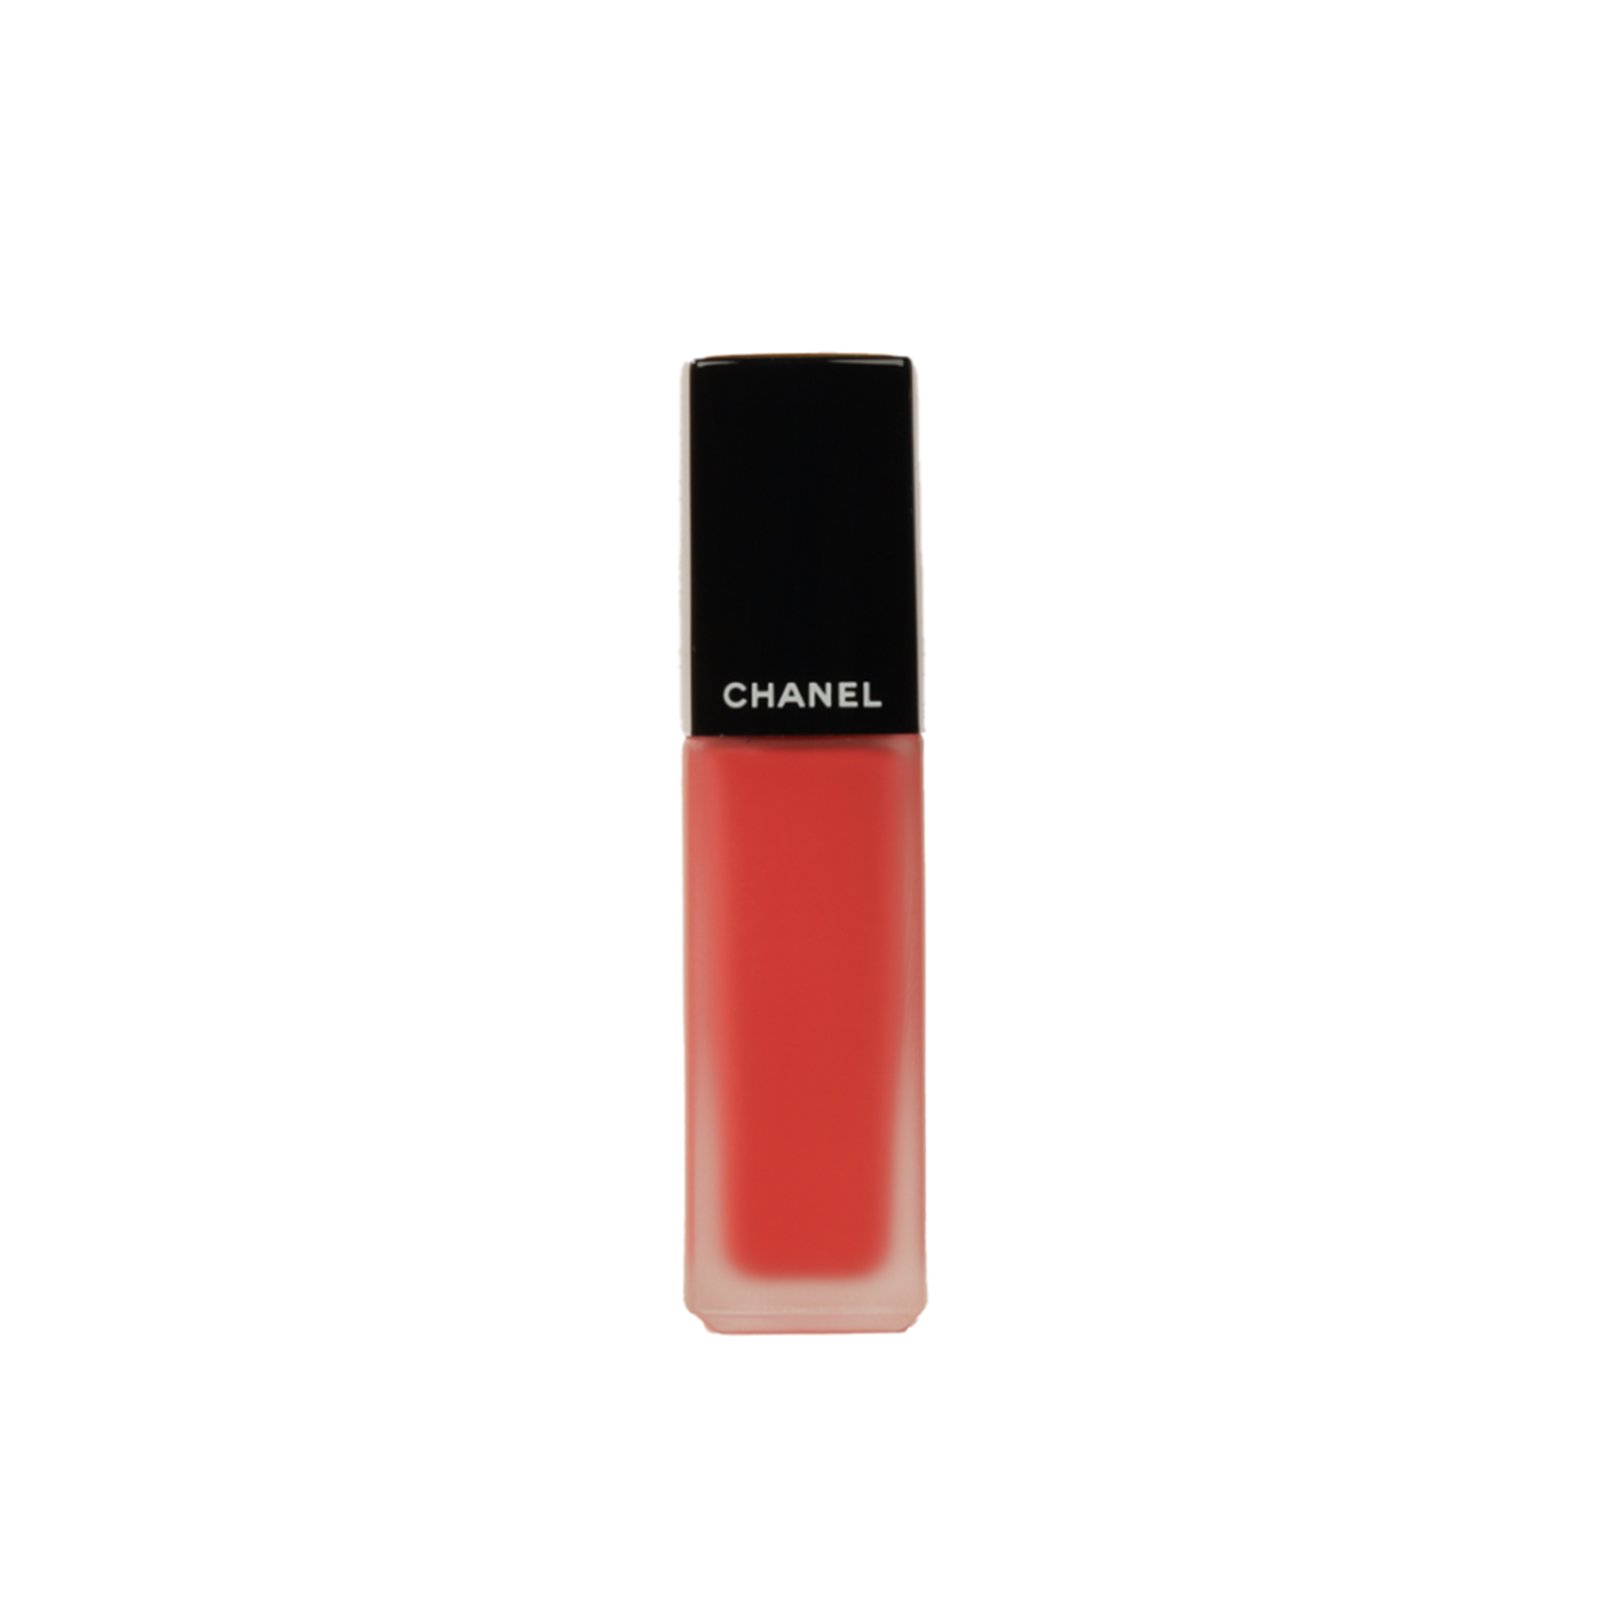 CHANEL Rouge Allure Ink Matte Liquid Lip Colour 144 Vivant 6ml (0.20 fl oz)